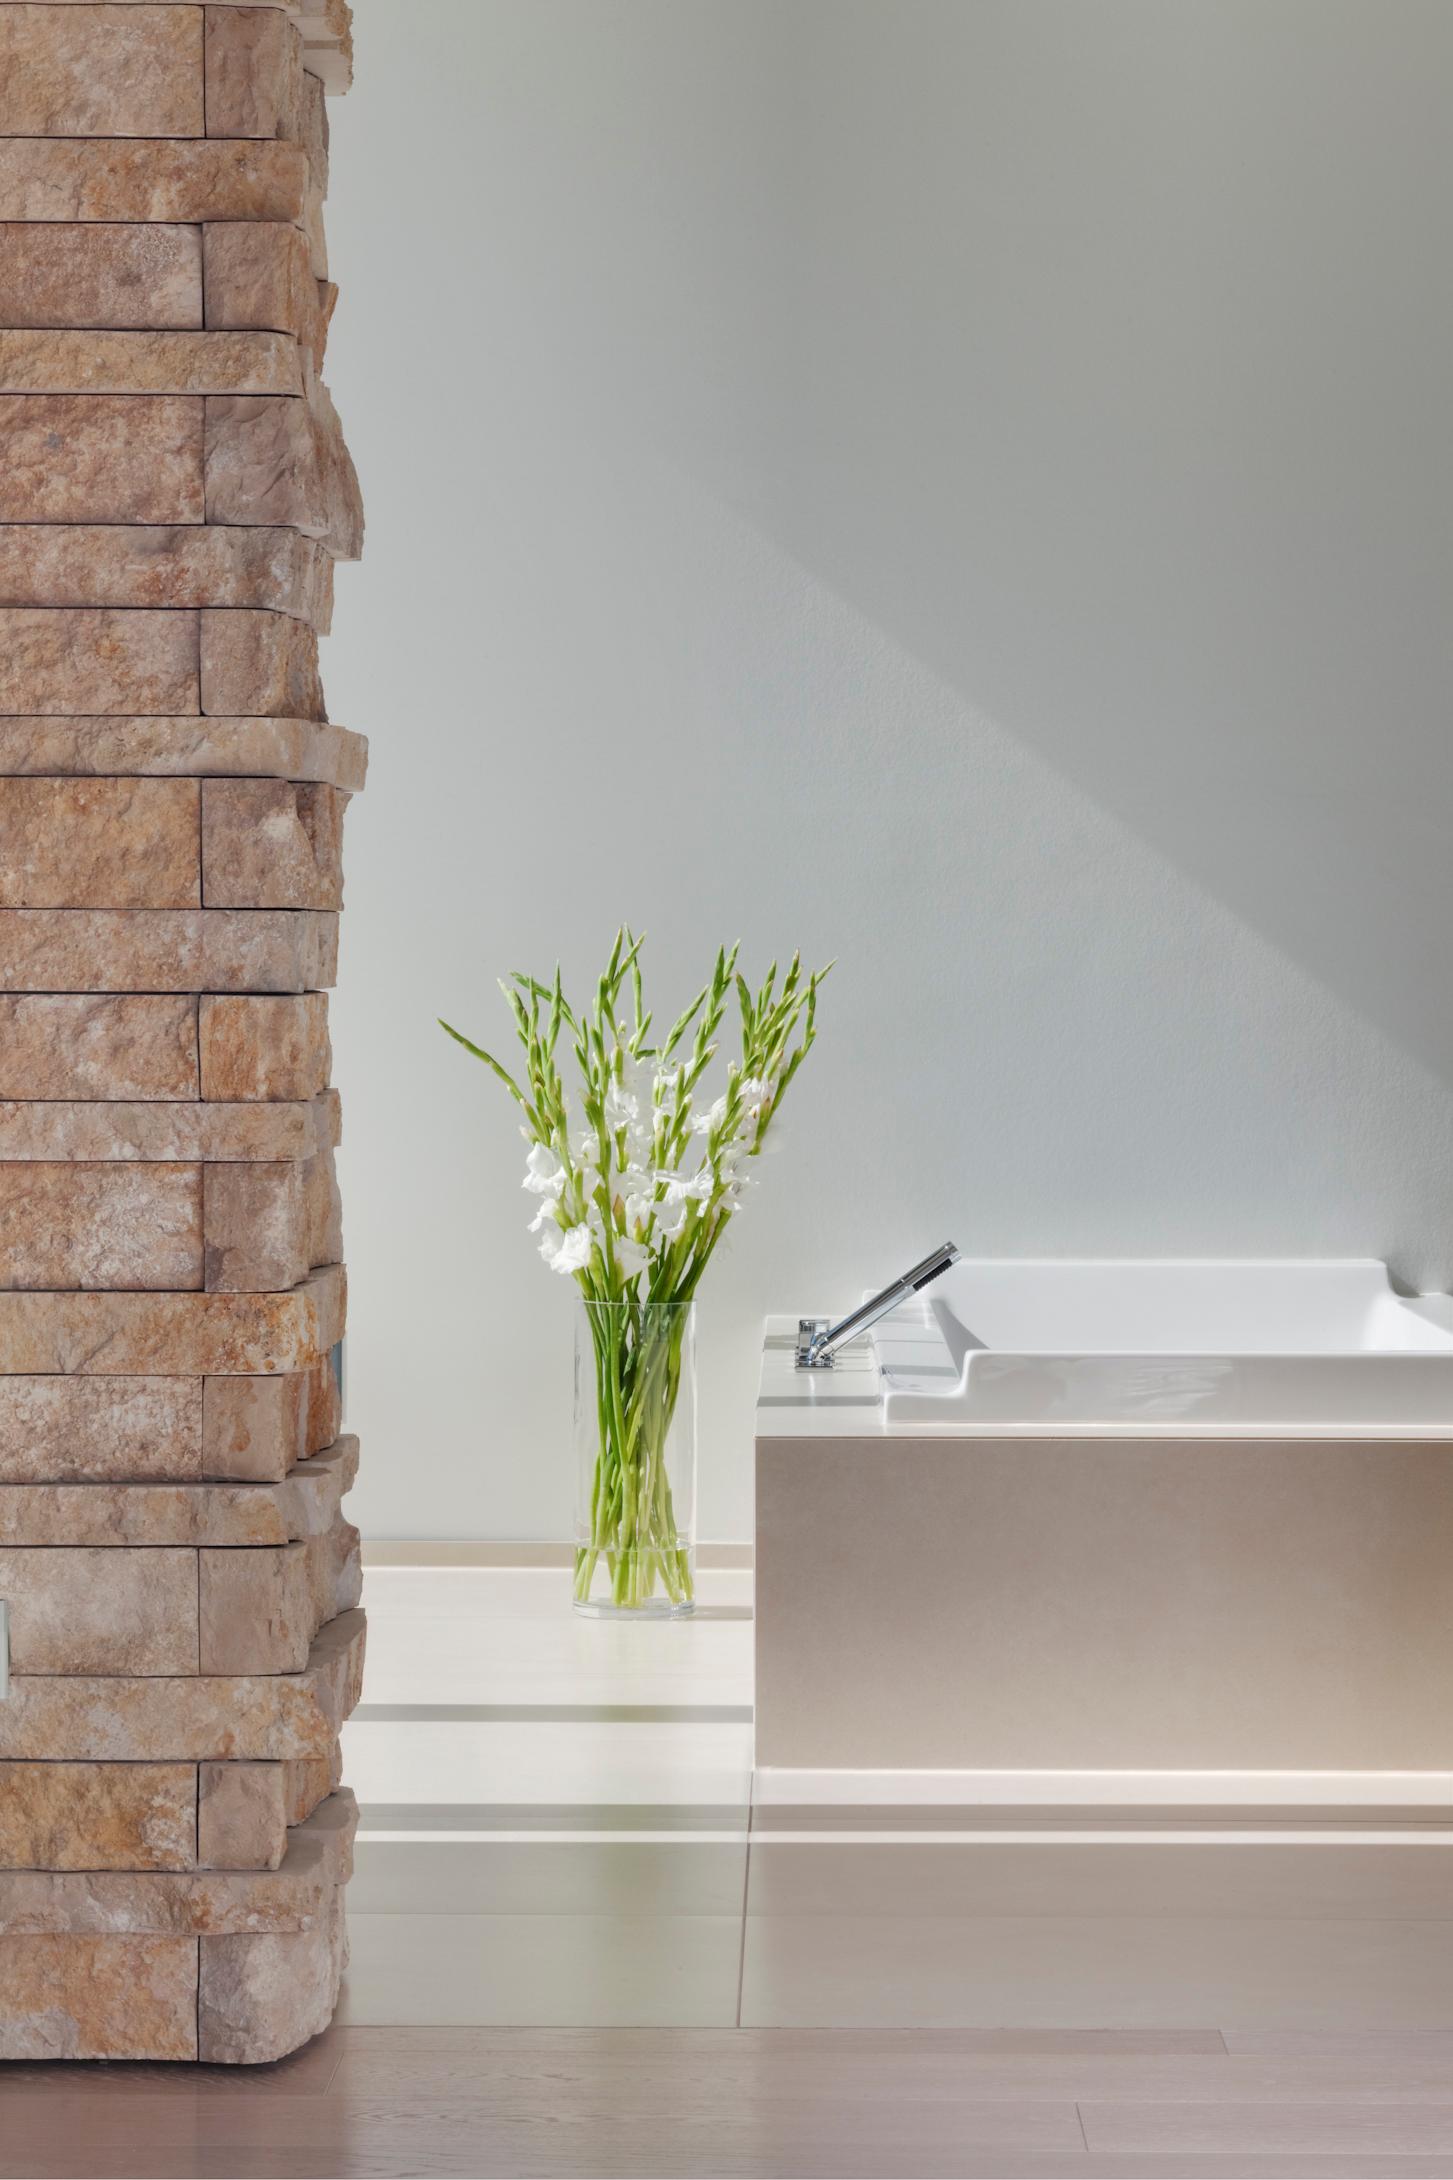 Badezimmer mit Natursteinmauerwerk #badewanne #badezimmer #bodenvase #natursteinwand #eckigebadewanne #bruchsteinwand ©Skandella Architektur Innenarchitektur